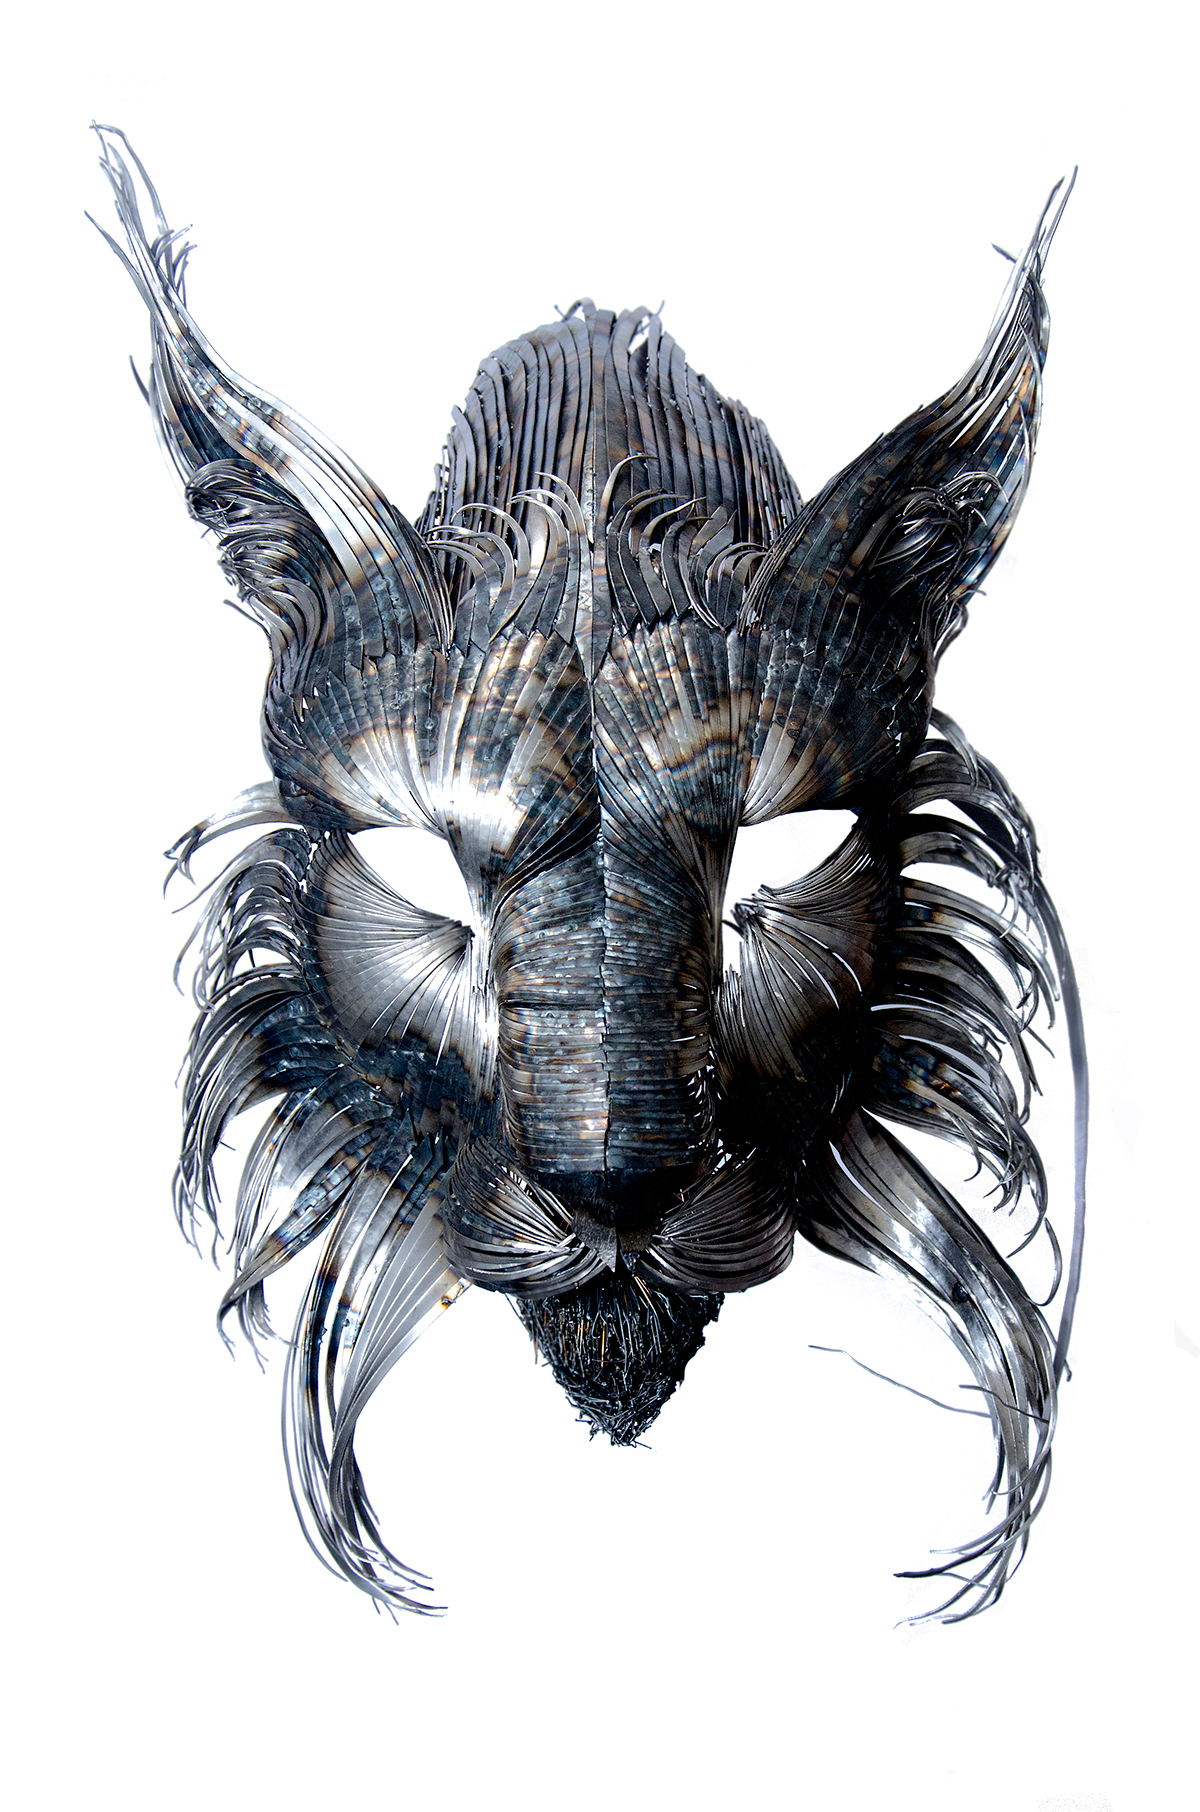 Selçuk Yılmaz – Steampunk sculptures lynx